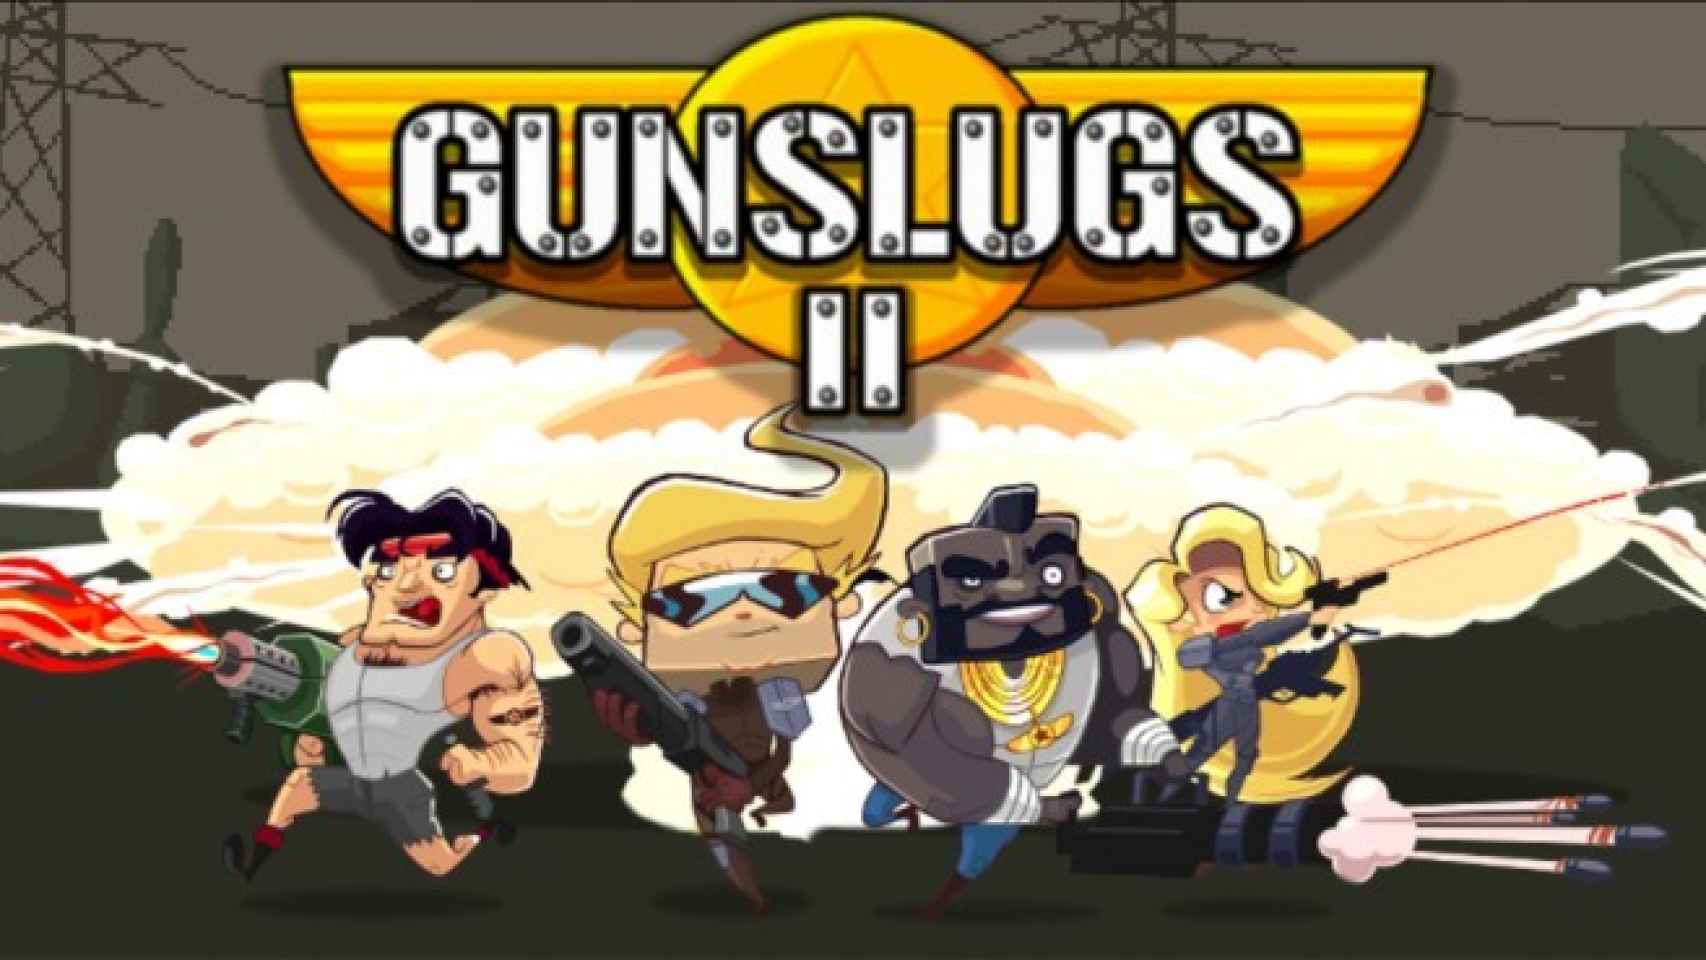 Gunslugs 2, el juego de 8 bits con más humor y acción